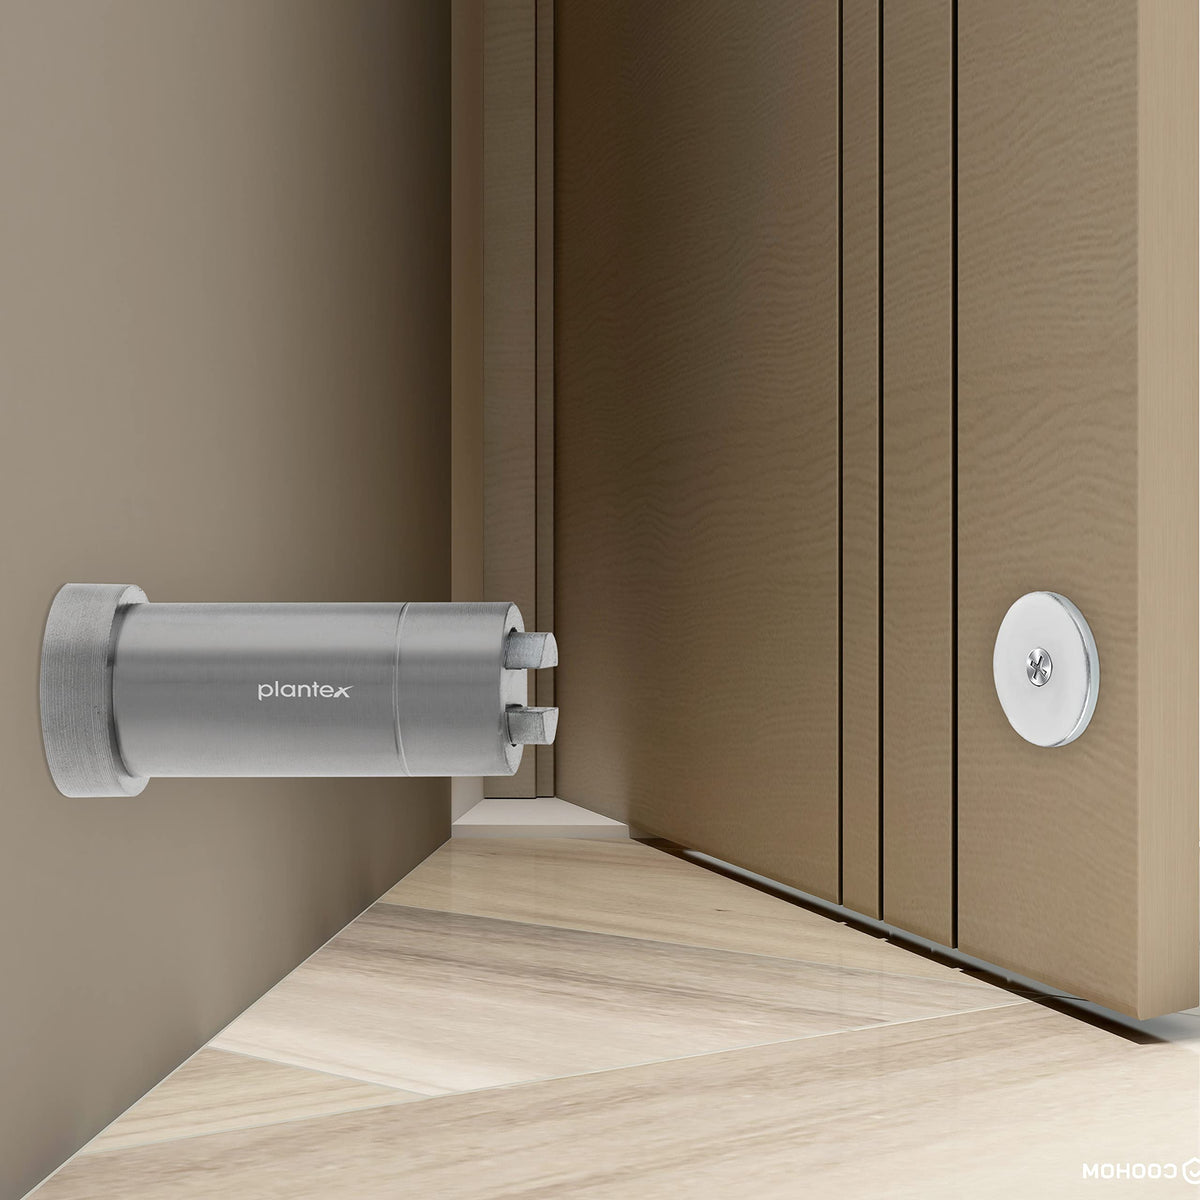 Plantex Stainless Steel 3 inch Round Door Magnet/Door Stopper/Door Catcher for Home/Office/Hotel - Pack of 1 (APS-1117-Matt)